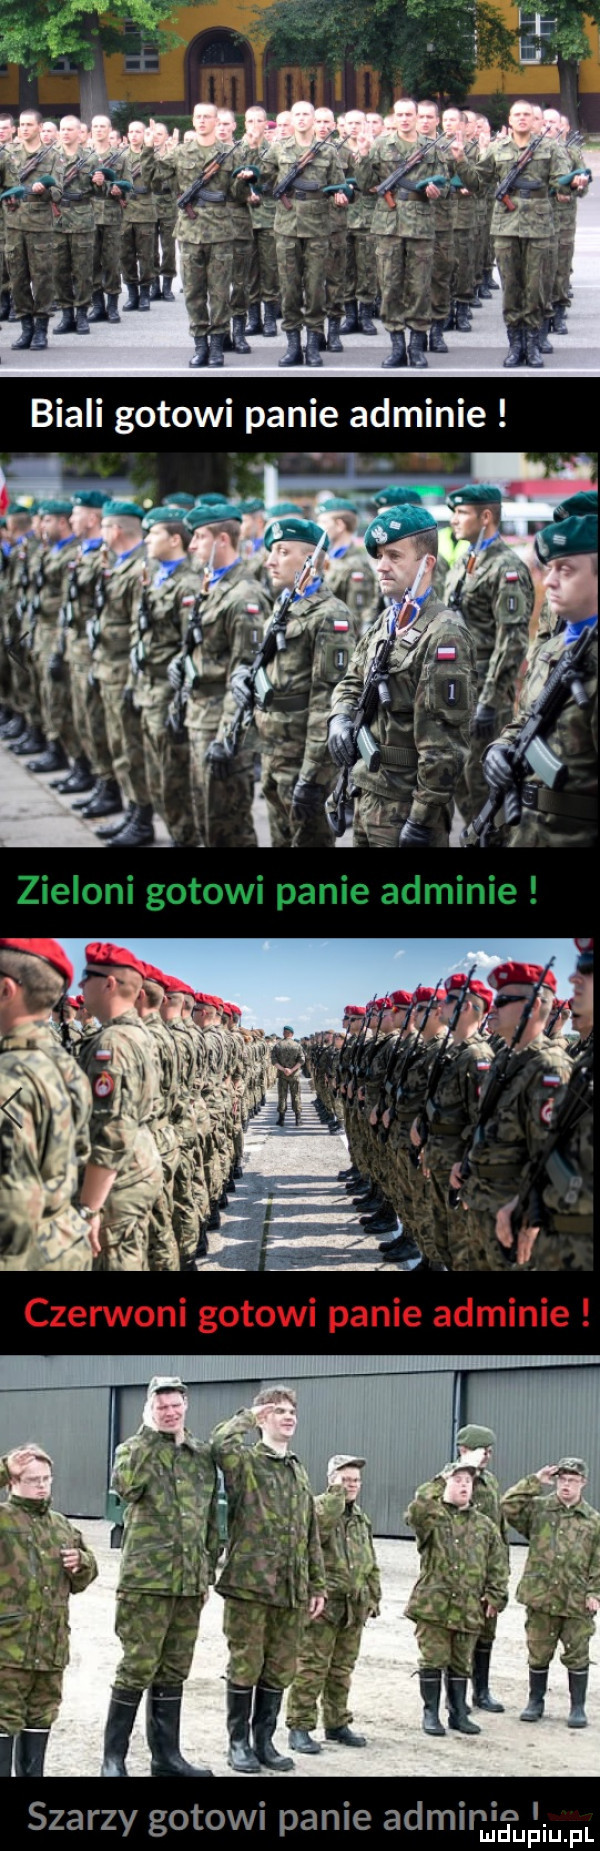 szarzy gotowi panie adminin. mduplu pl